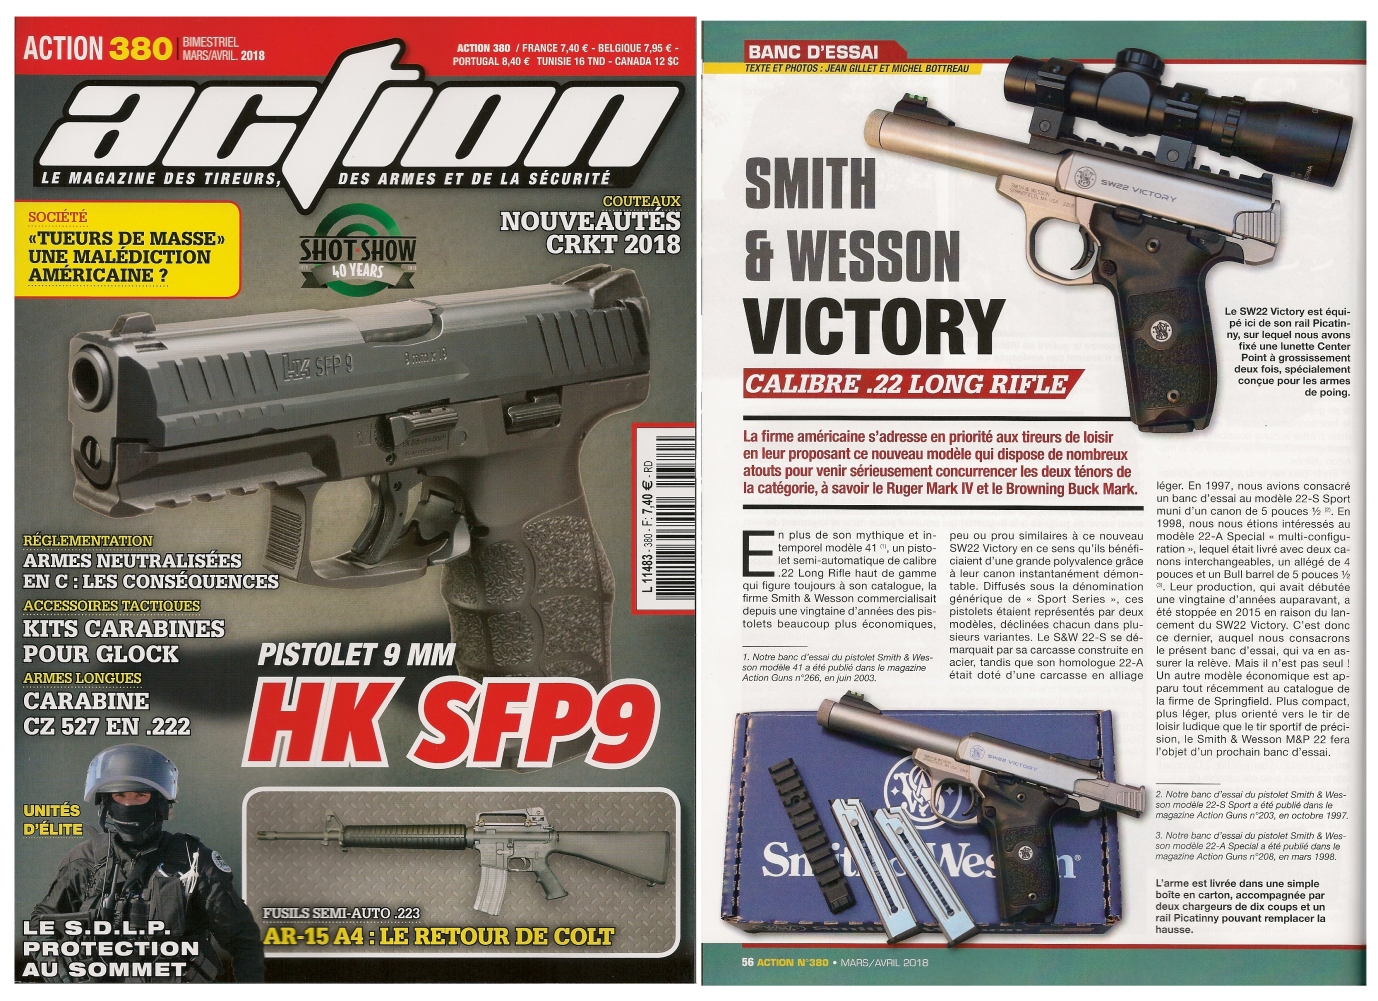 Le banc d’essai du pistolet Smith & Wesson SW22 Victory a été publié sur 6 pages dans le magazine Action n° 380 (mars/avril 2018). 